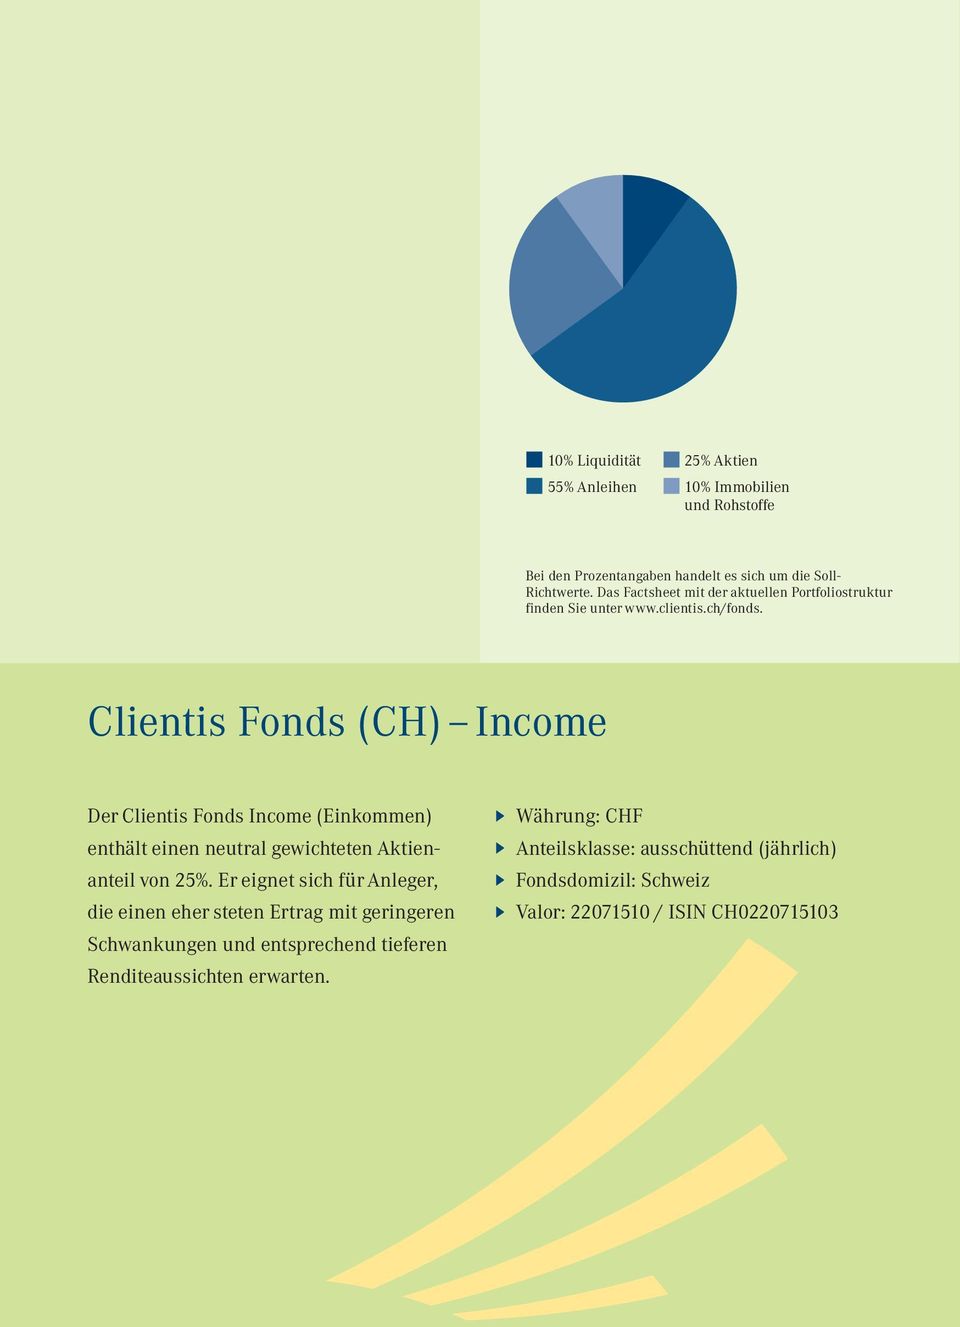 Clientis Fonds (CH) Income Der Clientis Fonds Income (Einkommen) enthält einen neutral gewichteten Aktienanteil von 25%.